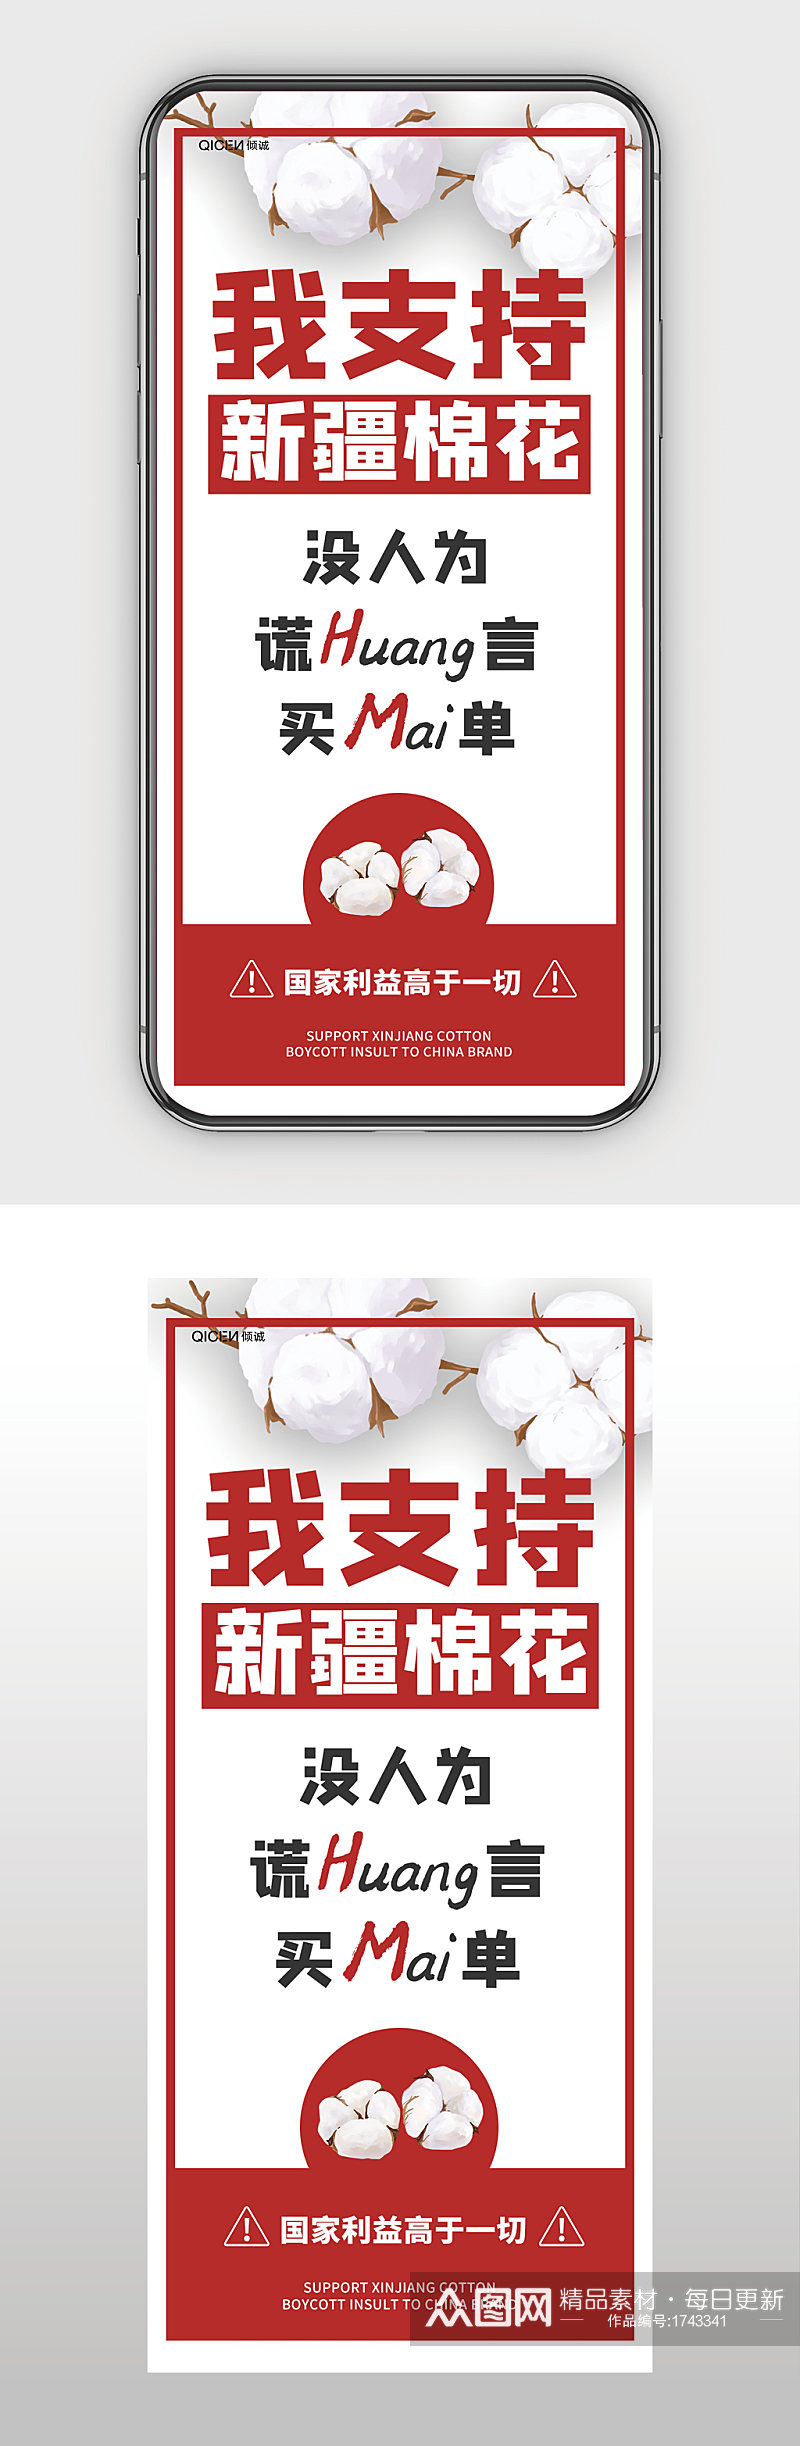 白棉花插画支持中国造力挺新疆棉手机海报素材